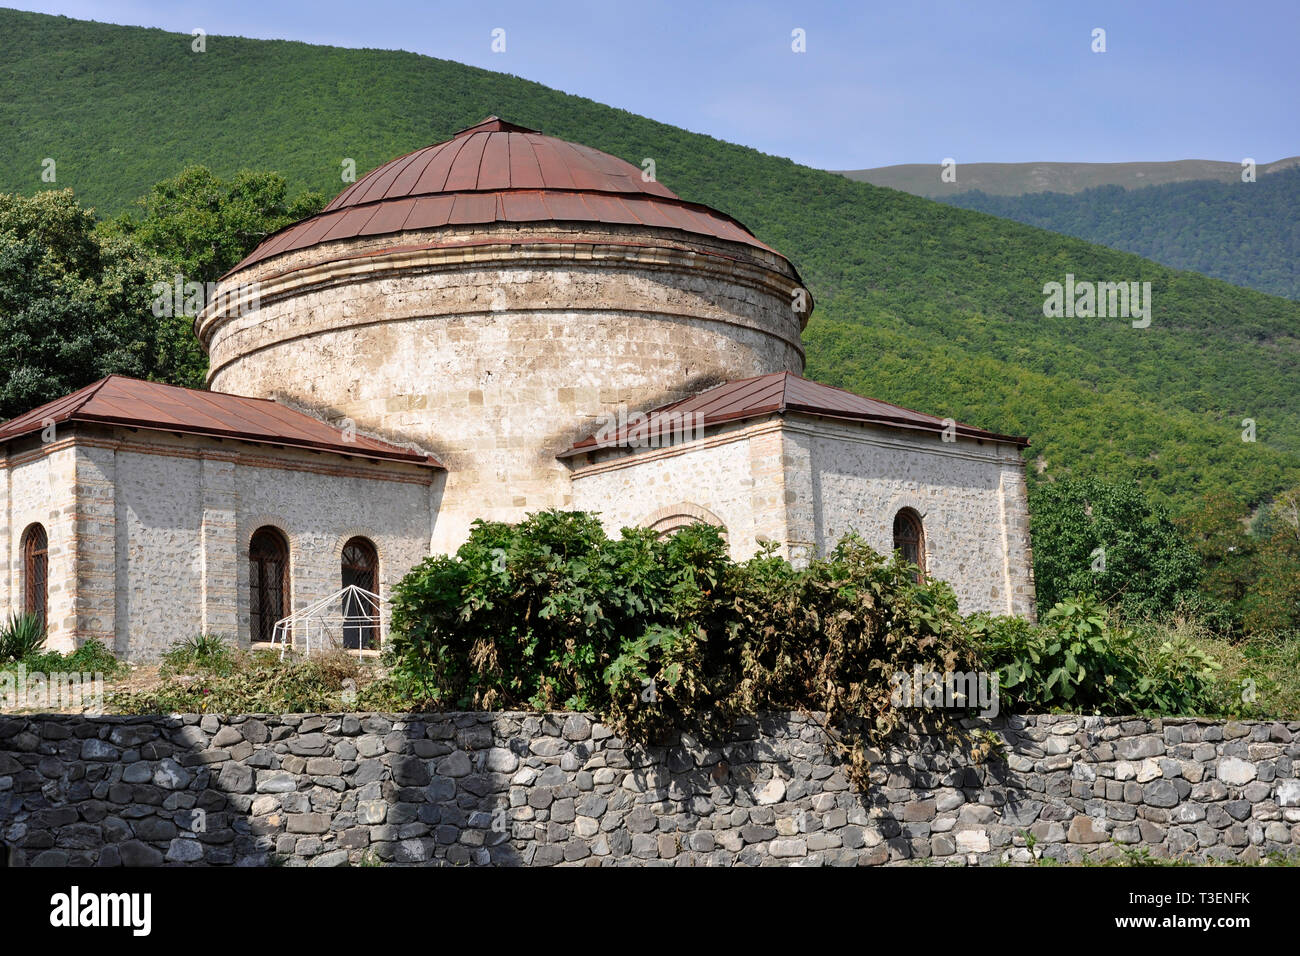 Azerbaijan, Shaki, architecture Stock Photo